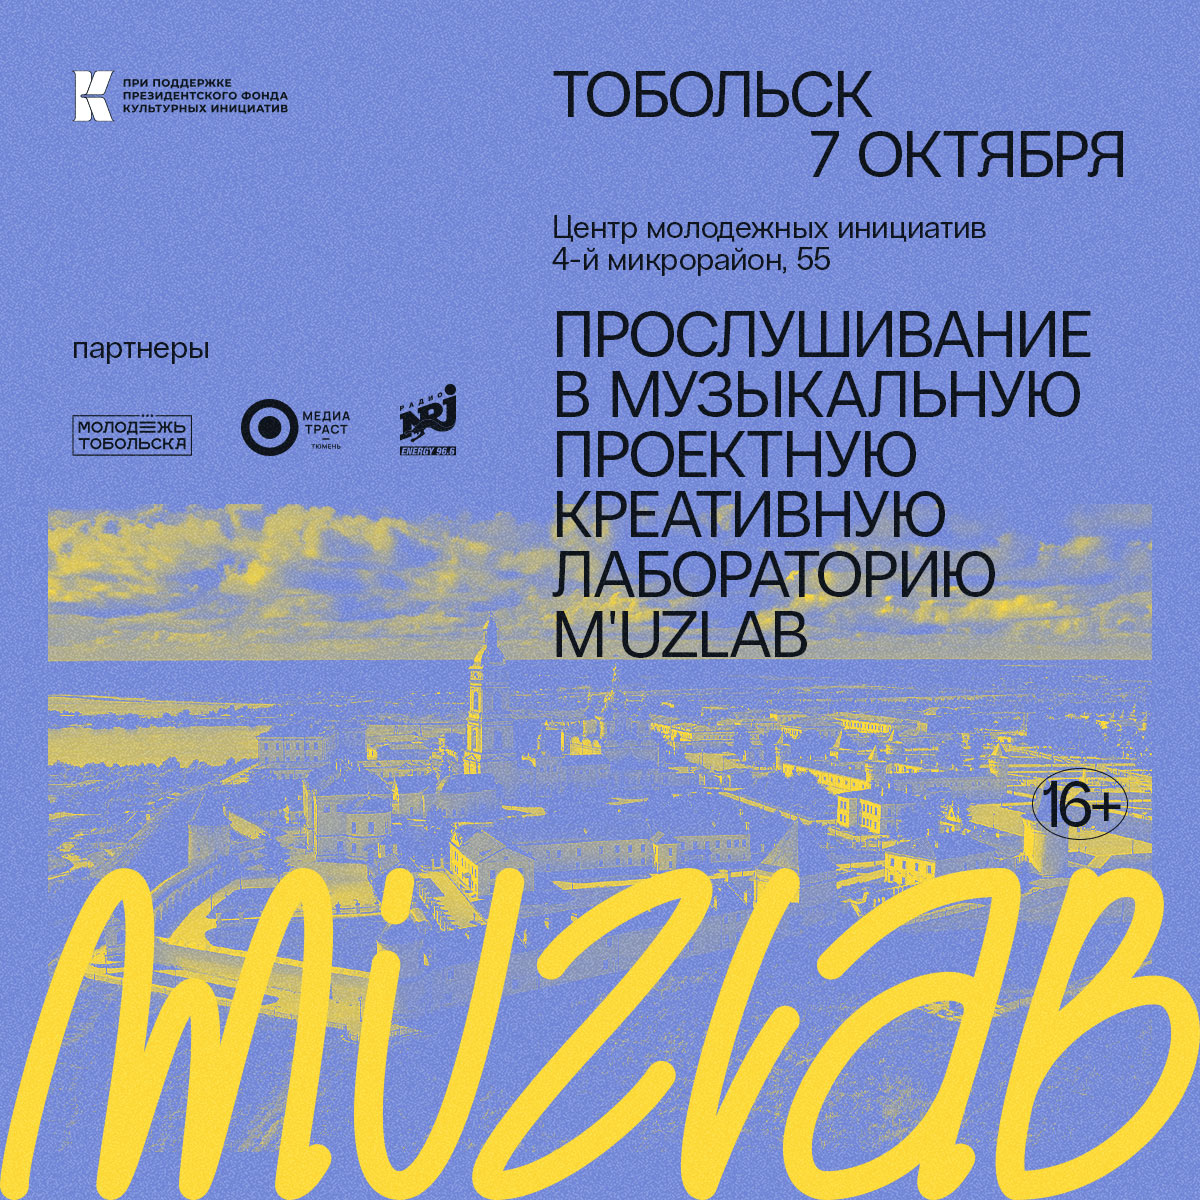 В Тобольск во второй раз приезжает лучшая креативная лаборатория по версии издания Forbes - M'uzlab